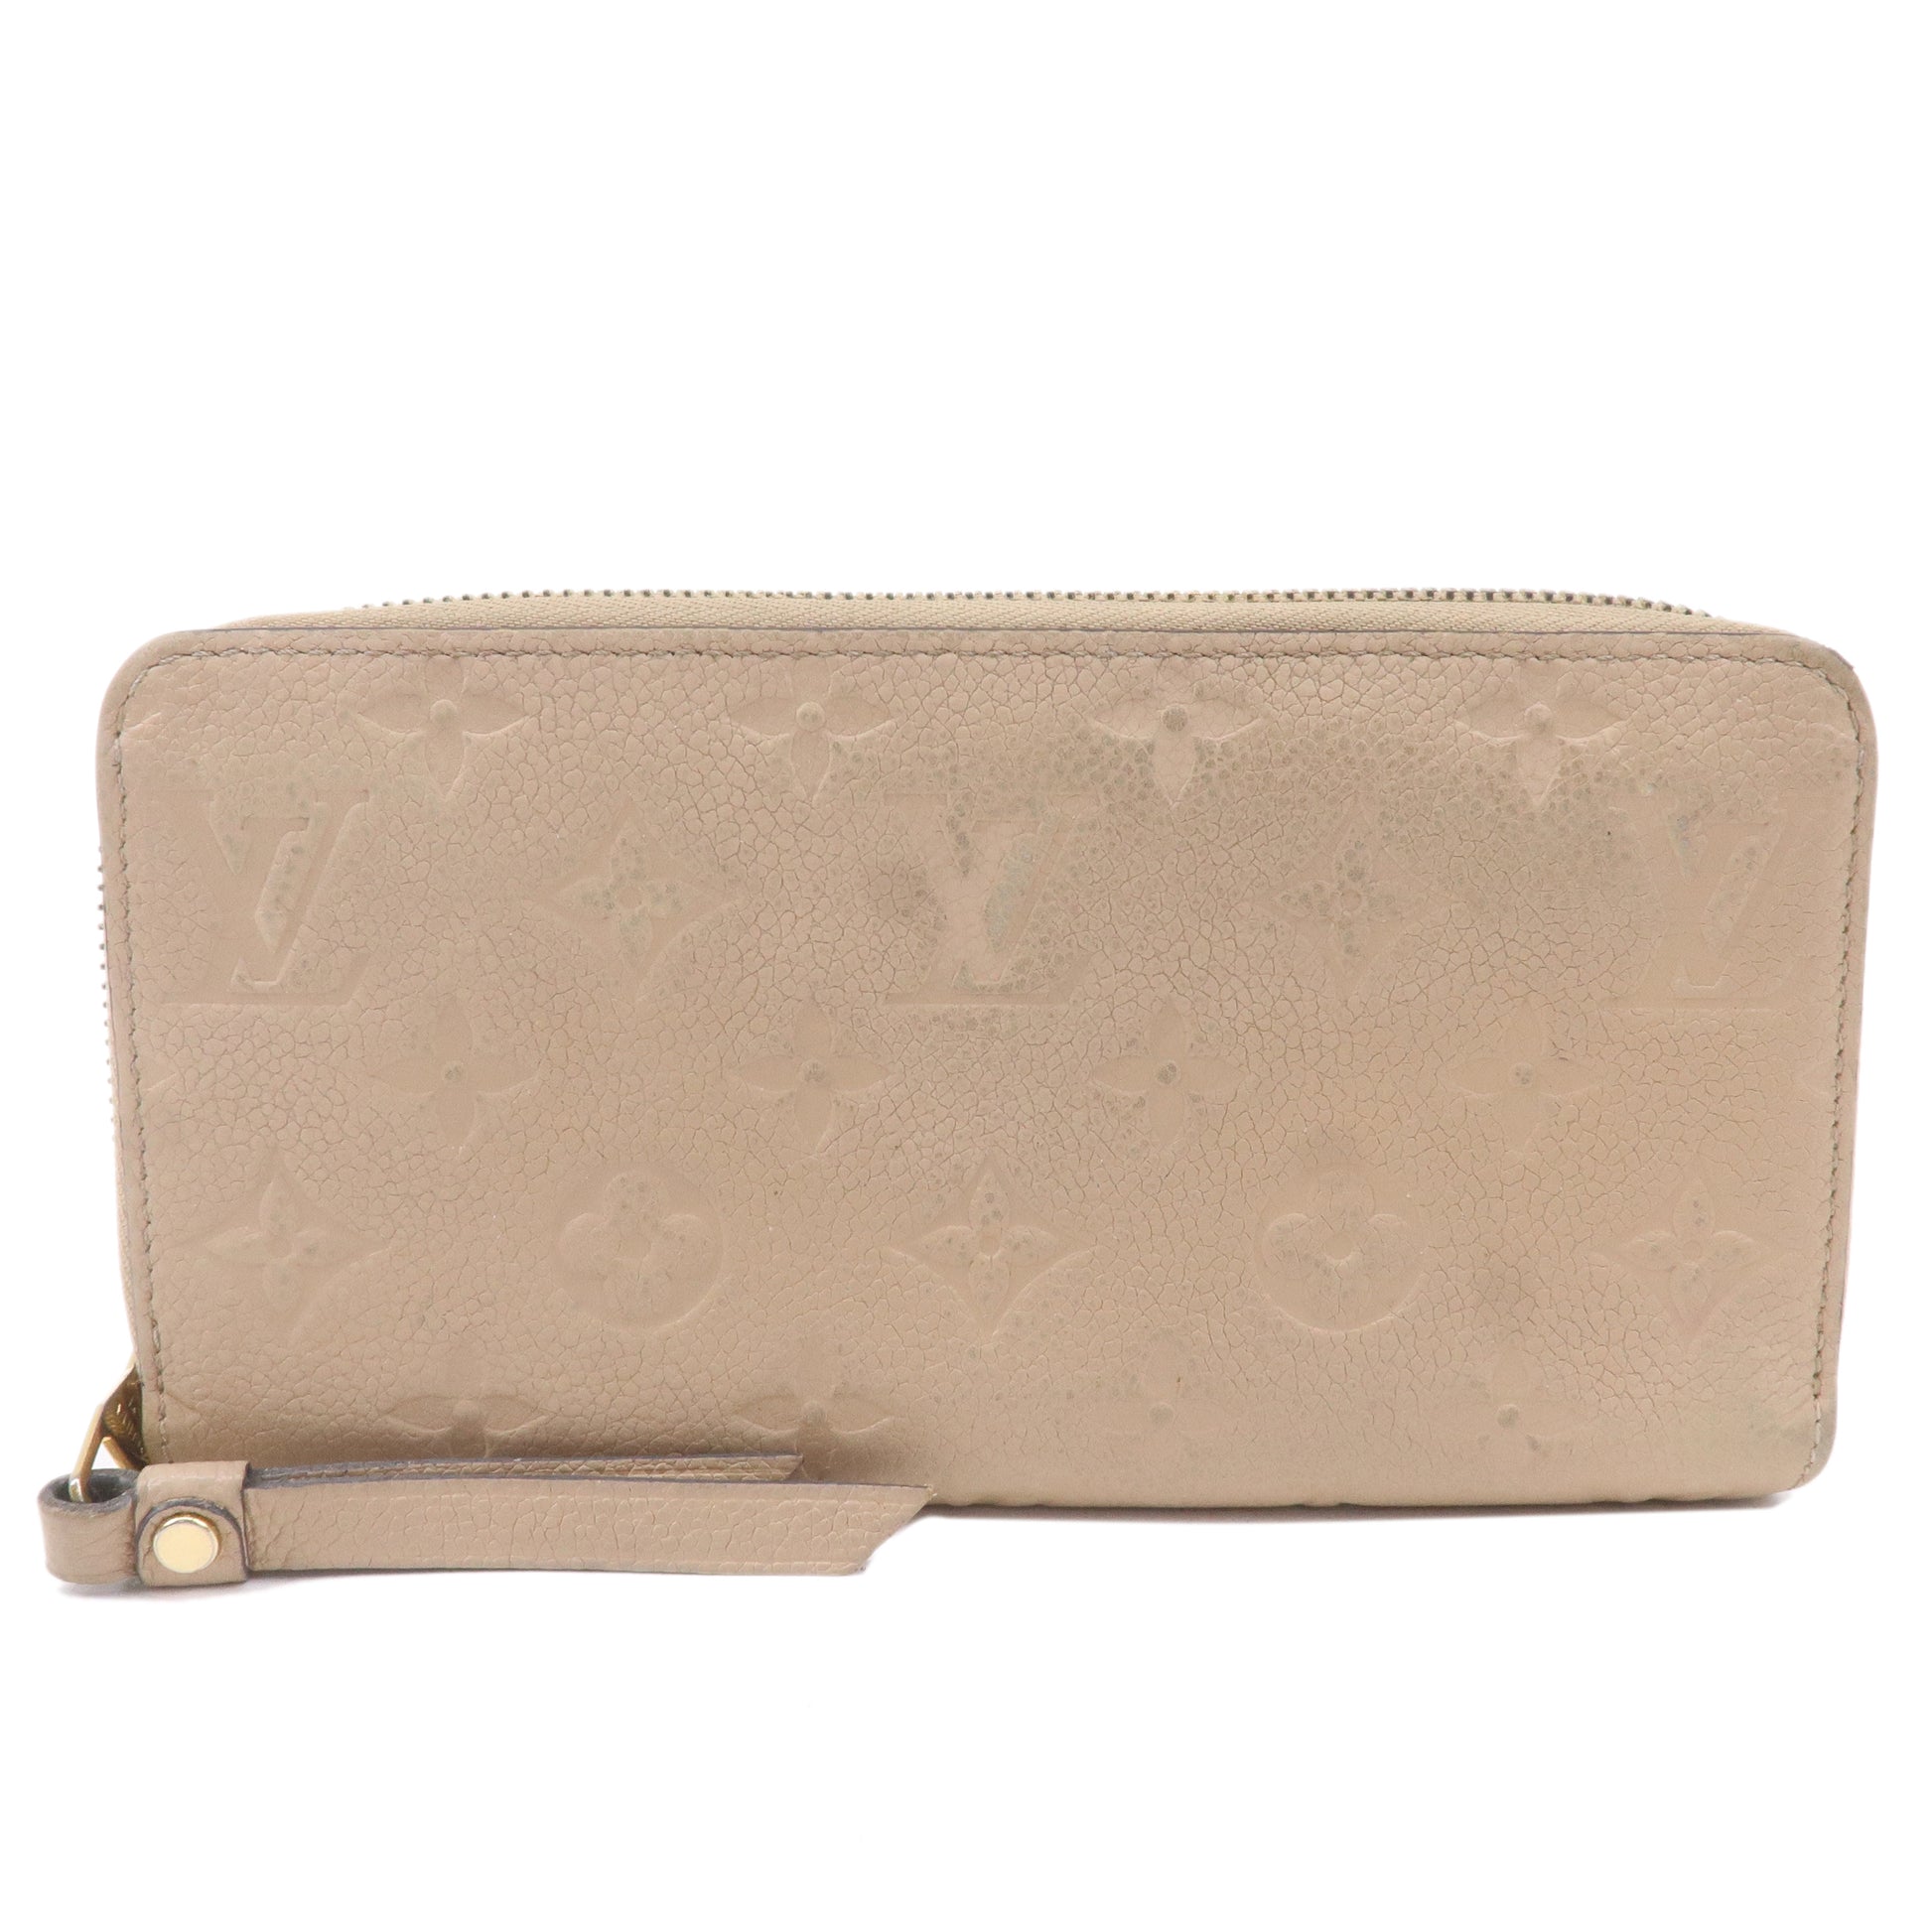 Louis Vuitton Monogram Empriente Leather Zippy Wallet on SALE